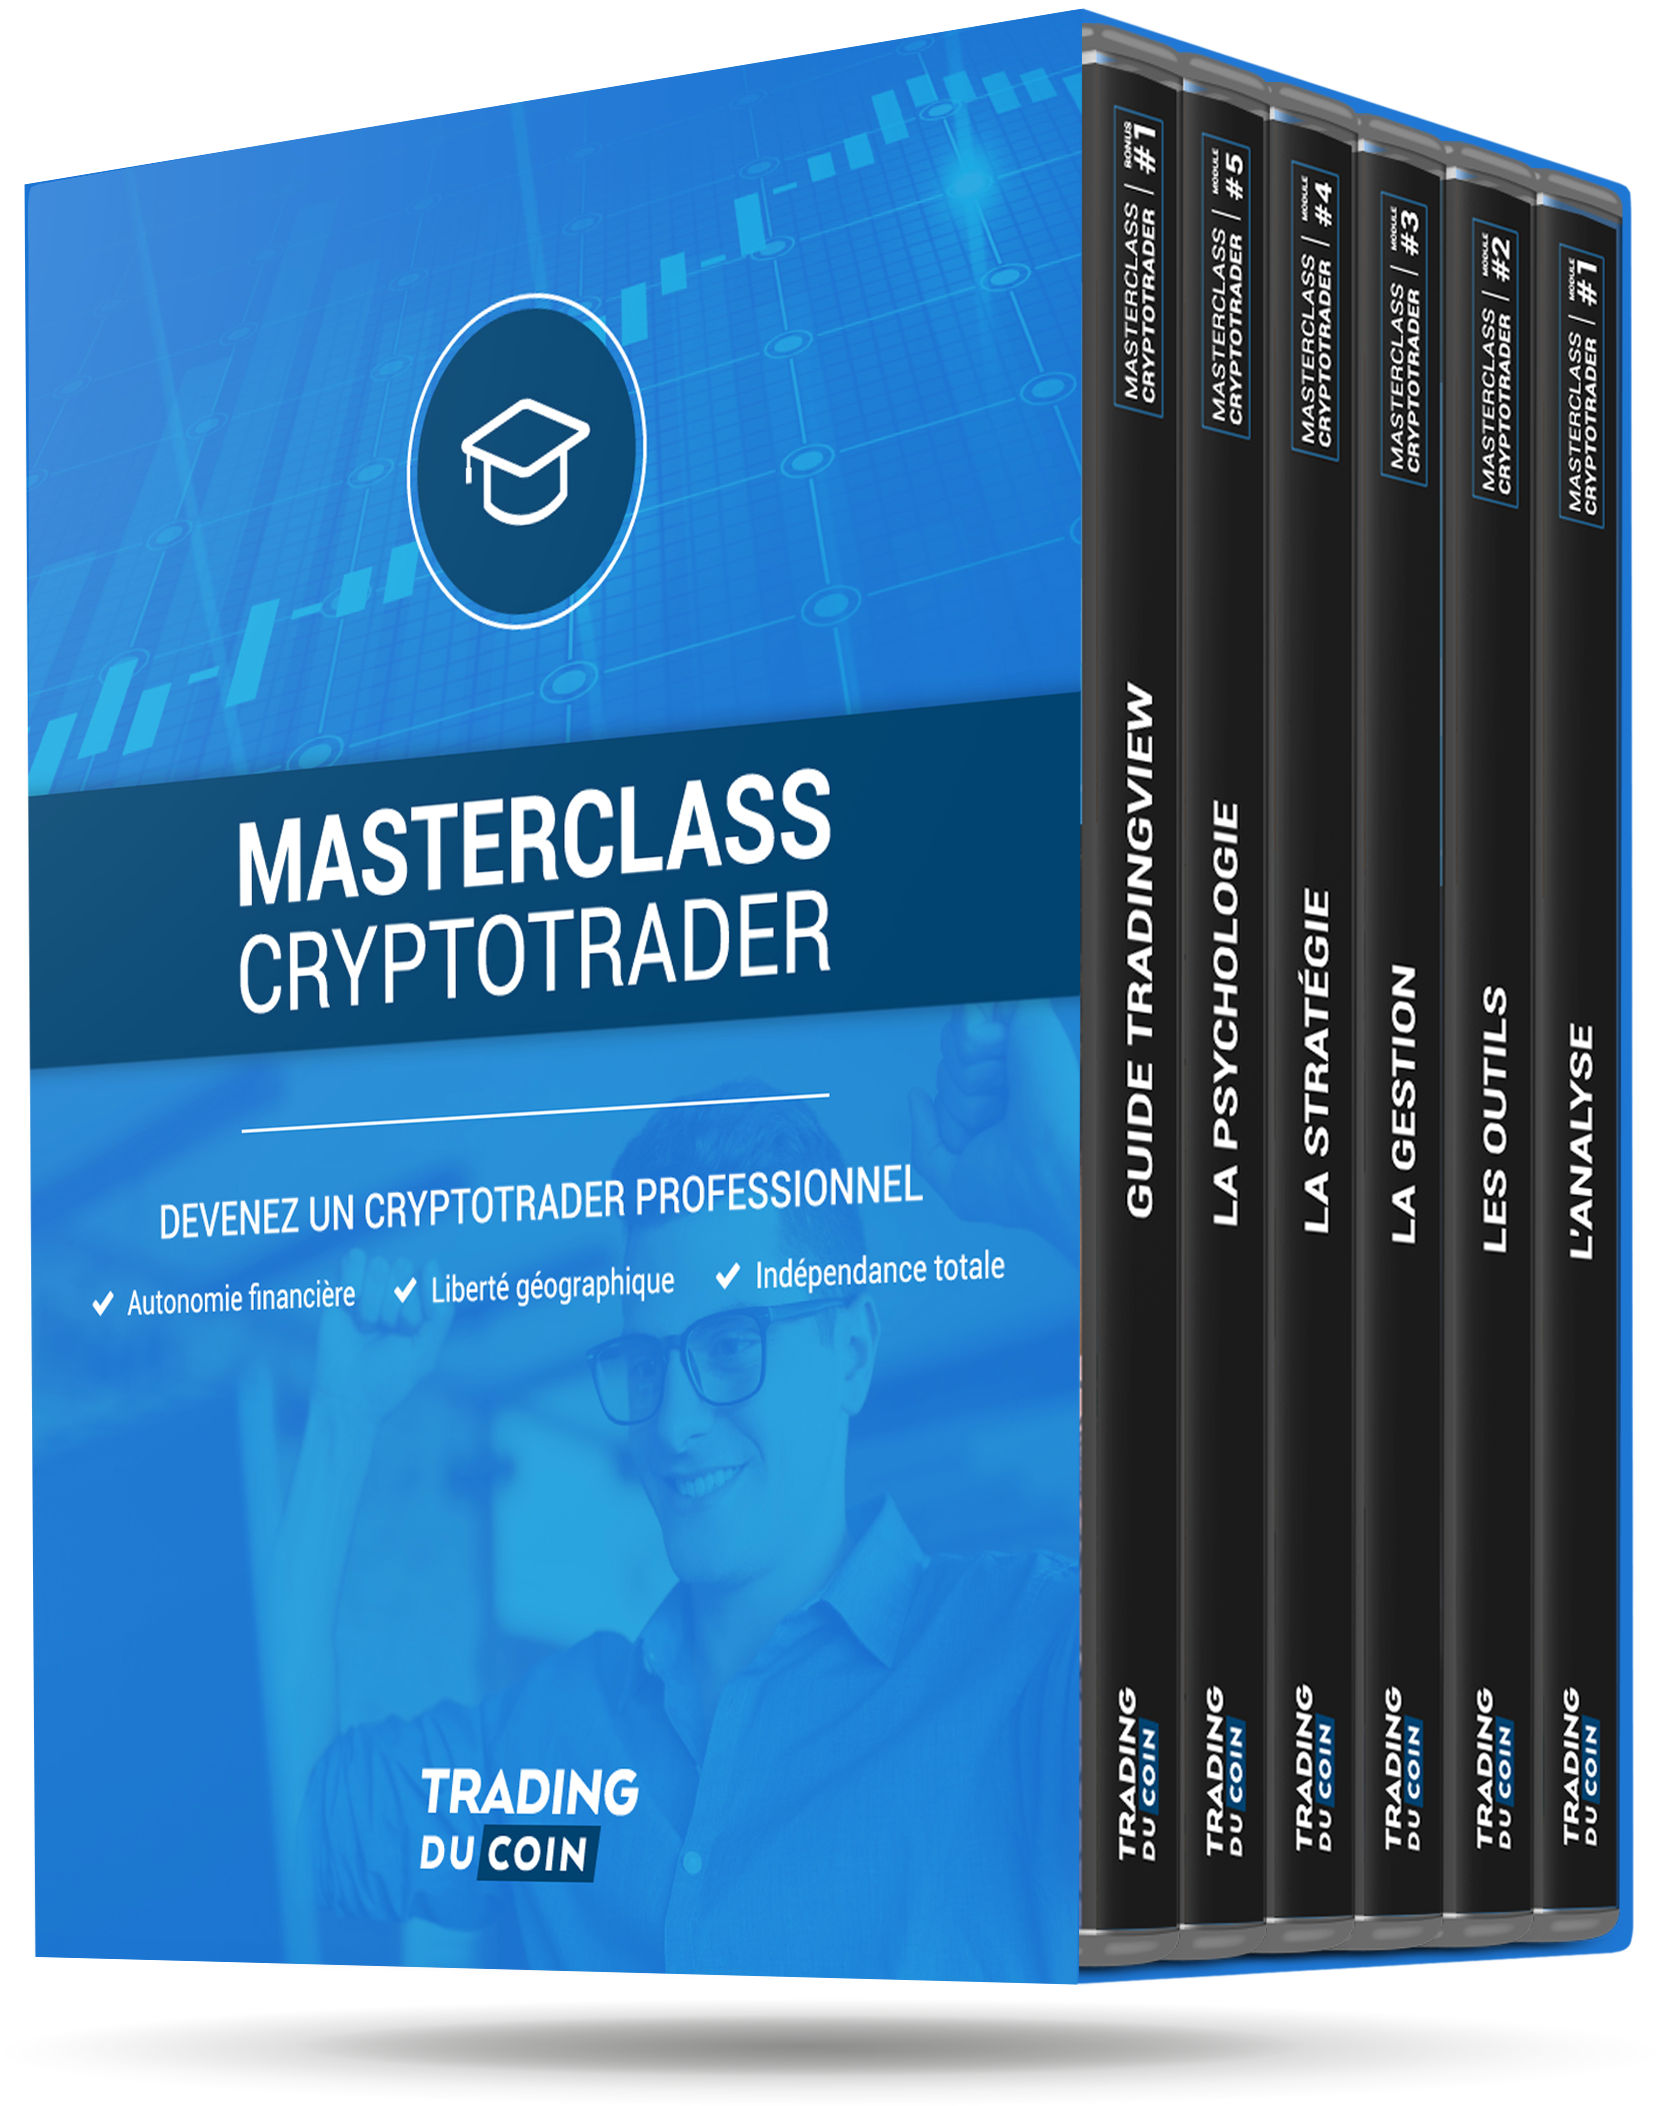 MasterClass CryptoTrader™